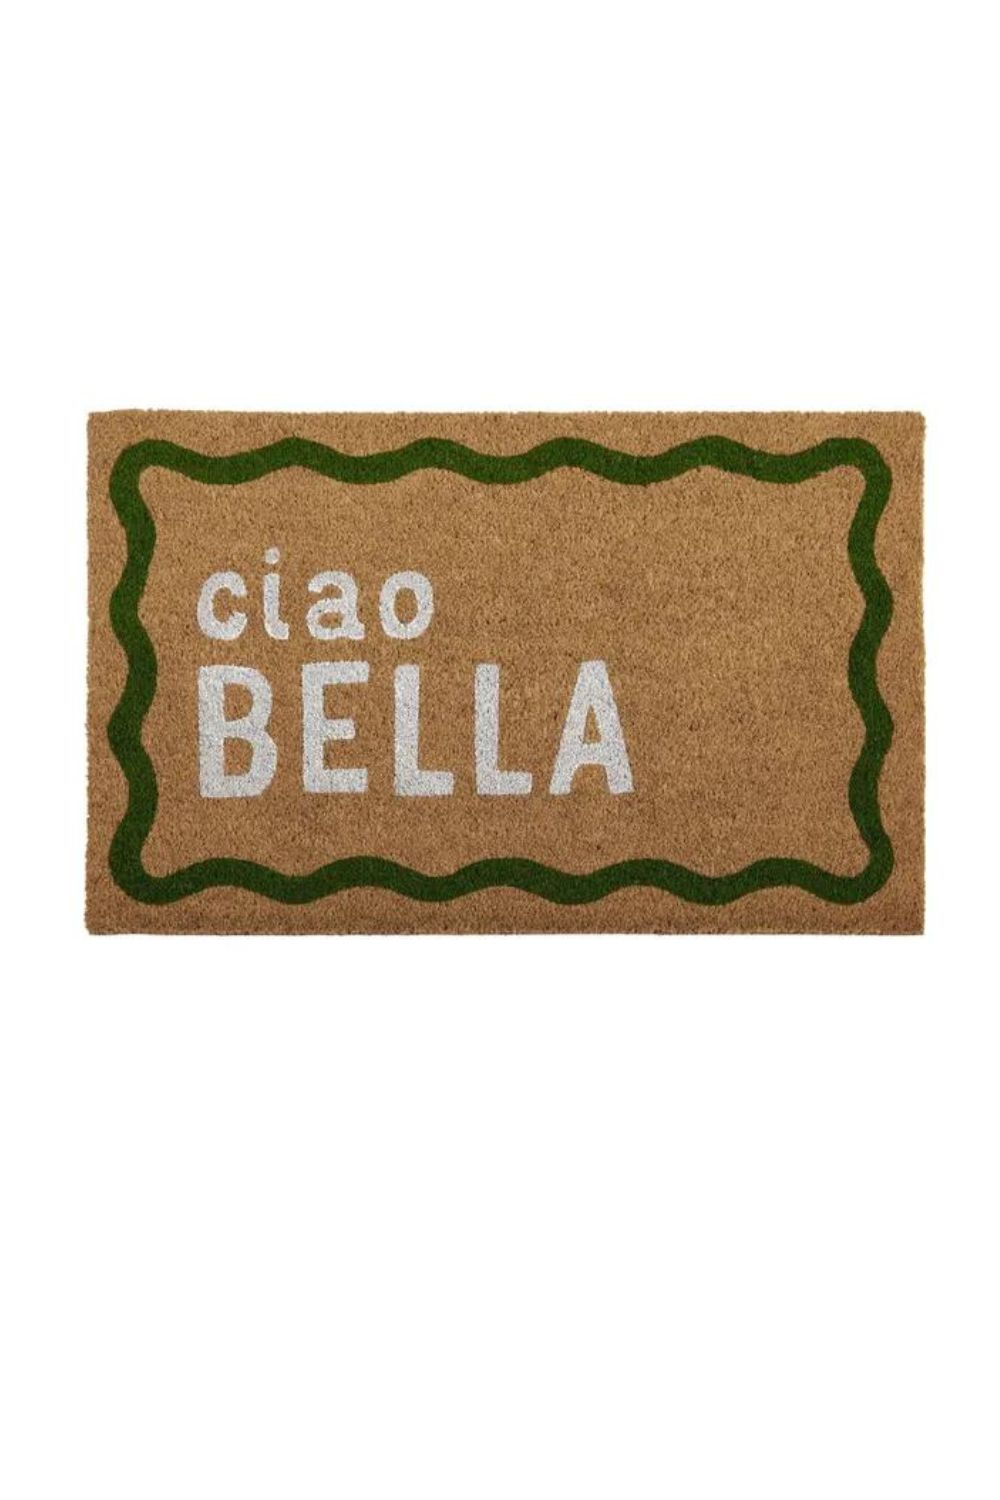 Ciao Bella Doormat